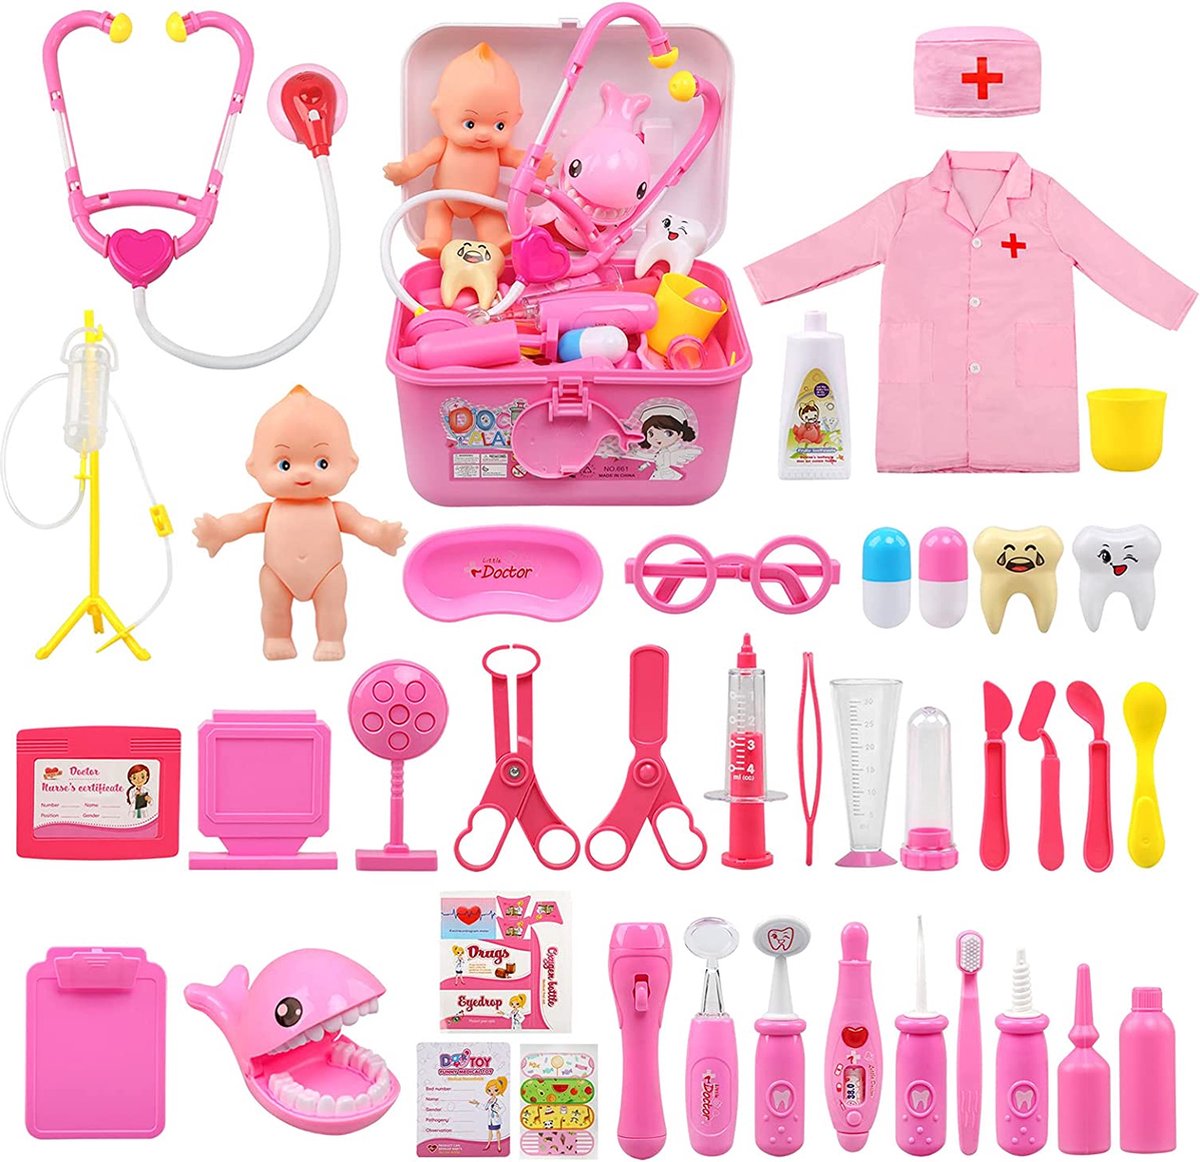 Kids Doctor Sets, 43 stuks artsen Set voor kinderen, verpleegster kostuum artsen verkleden voor kinderen meisjes jongens leeftijd 3 4 5, medische set met stethoscoop speelgoed voor meisjes, roze